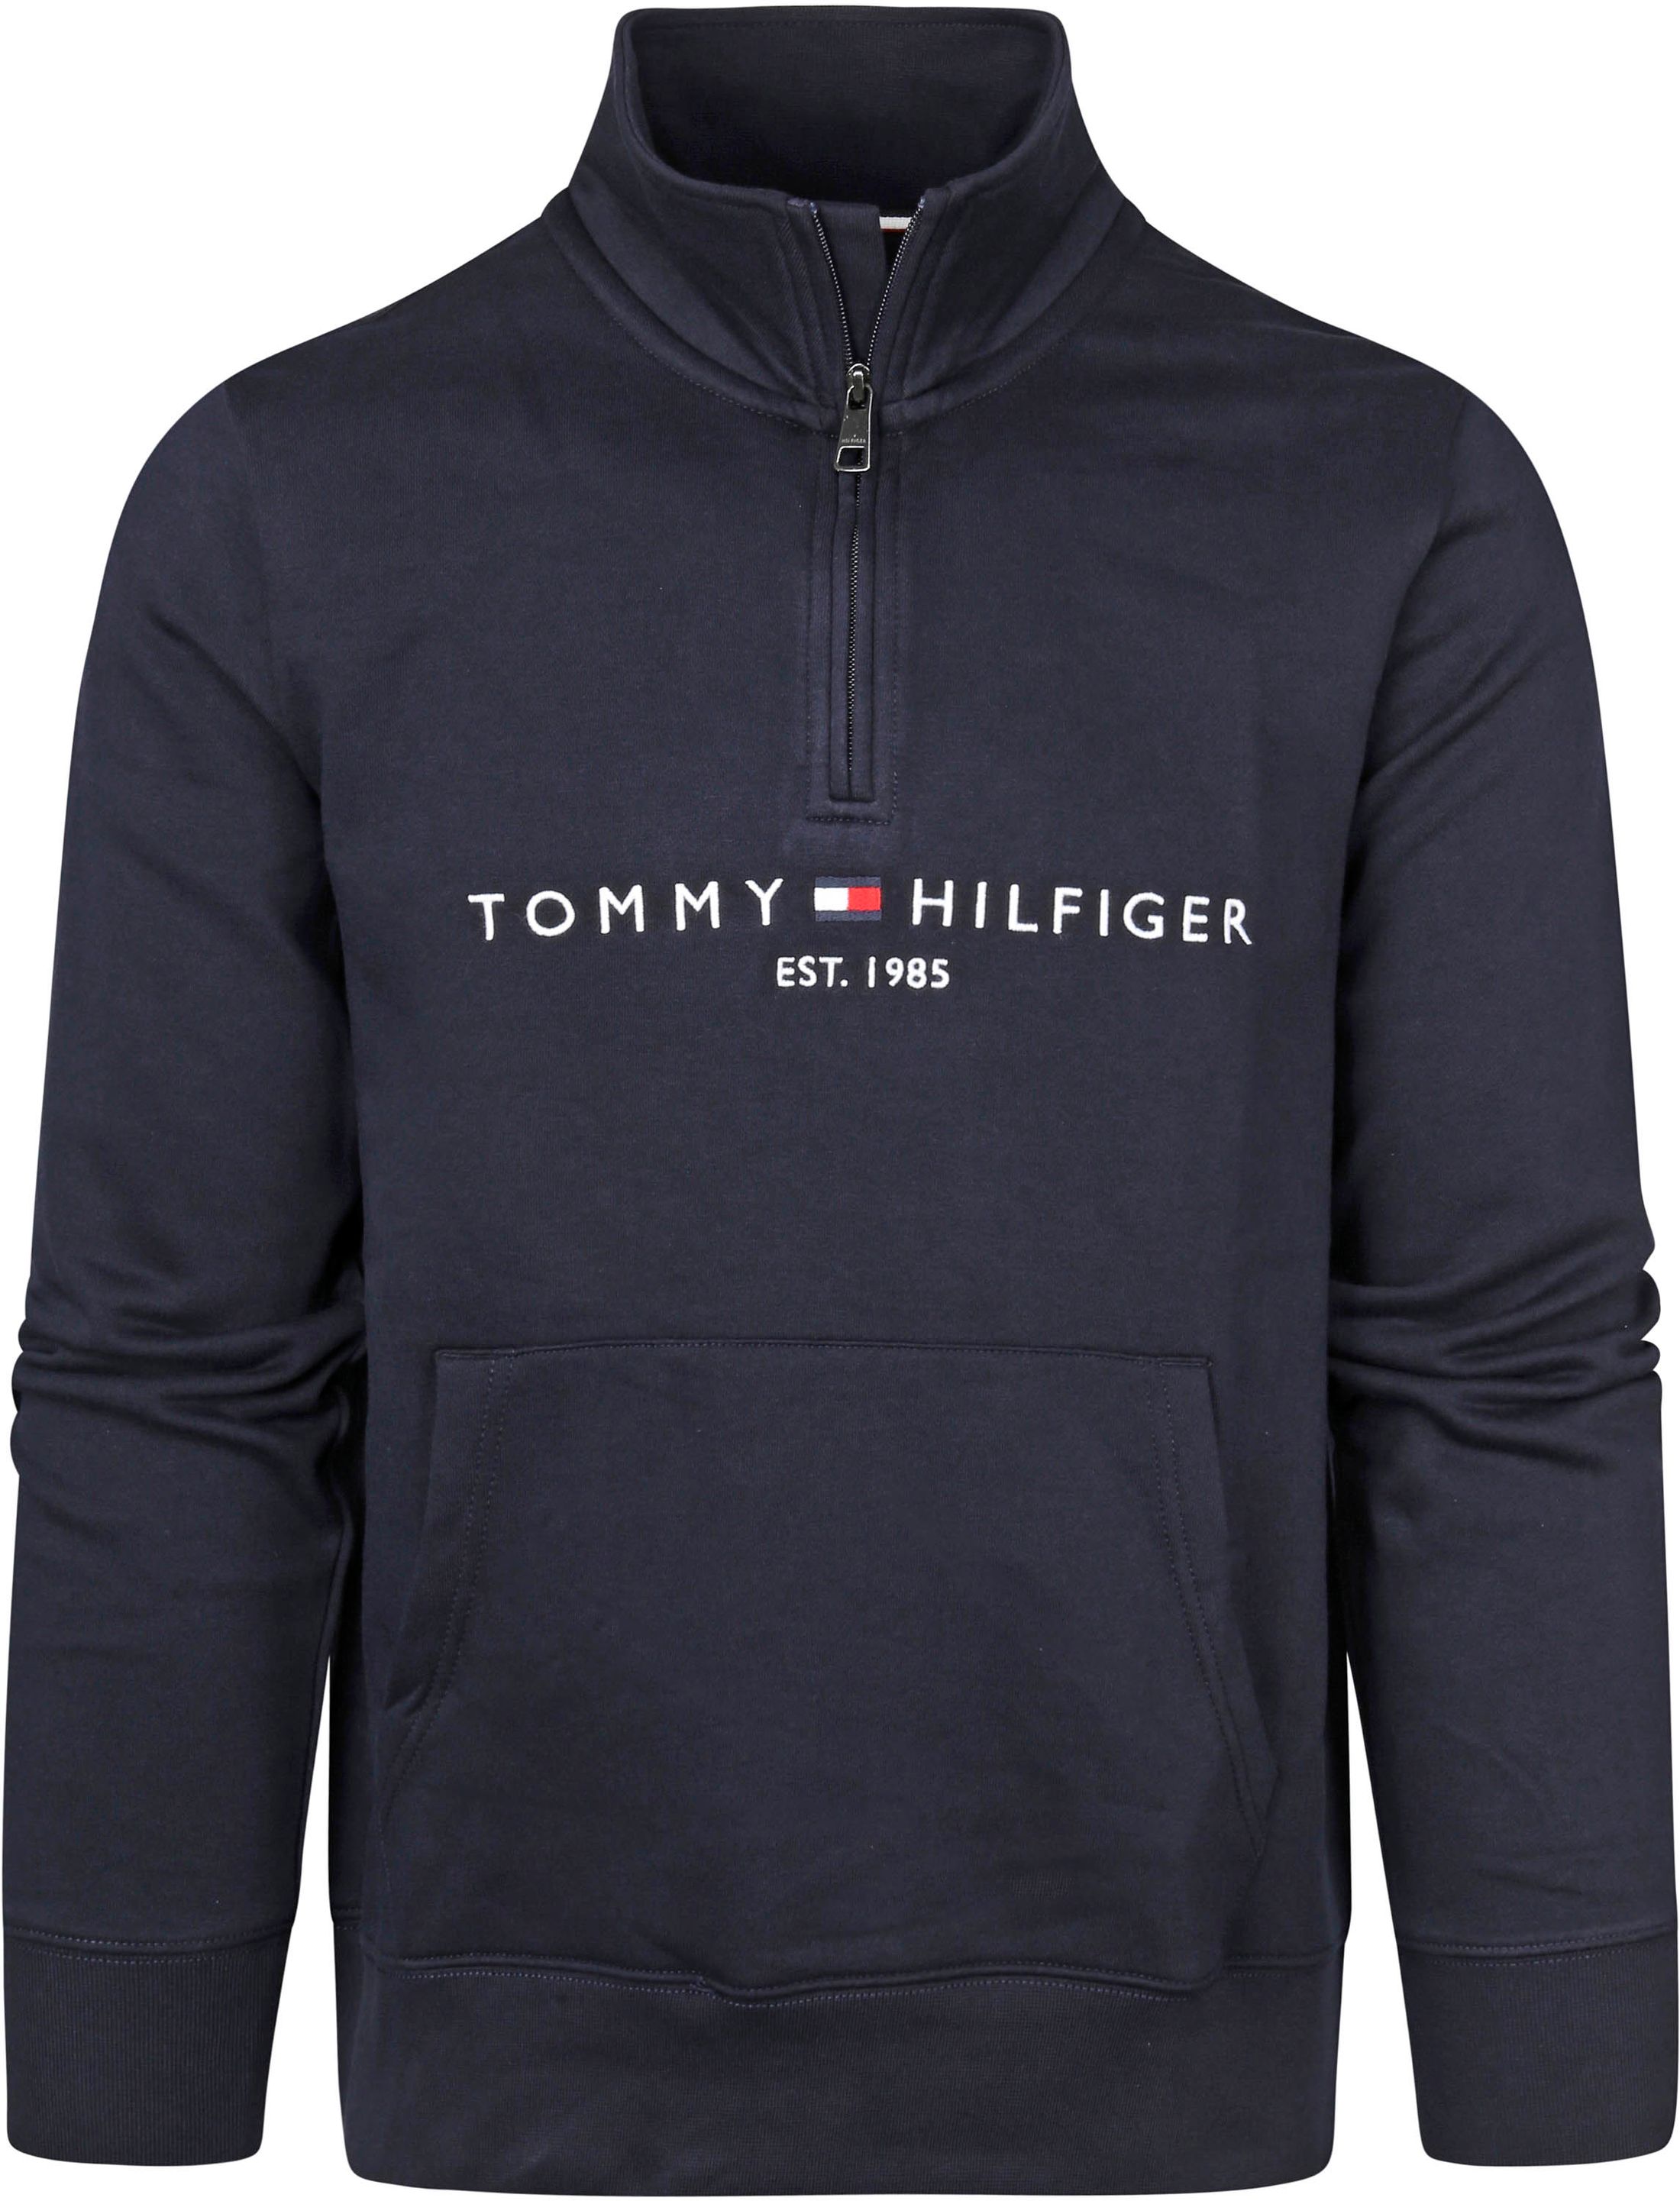 Tommy Hilfiger Zipper Pullover Dark Blue Dark Blue size L